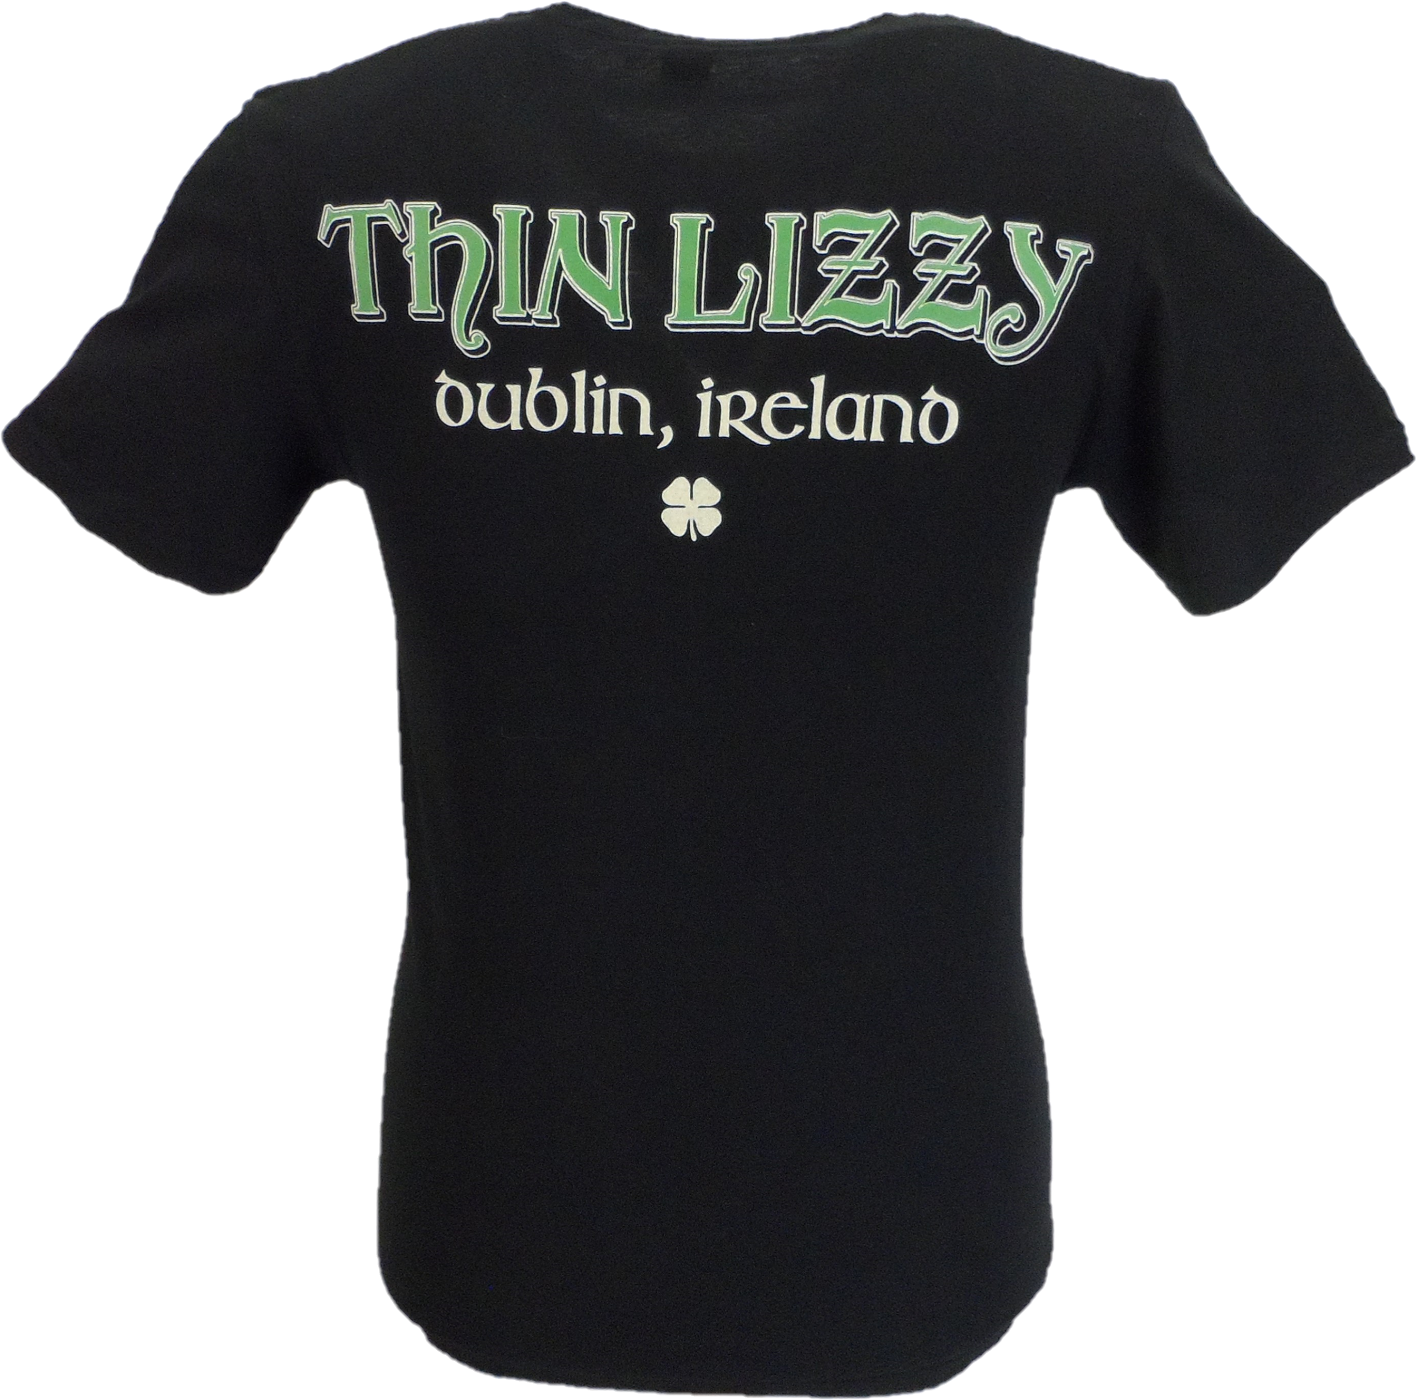 Dünner keltischer Herren-Lizzy-Ring mit Rückenaufdruck. Officially Licensed T-Shirts